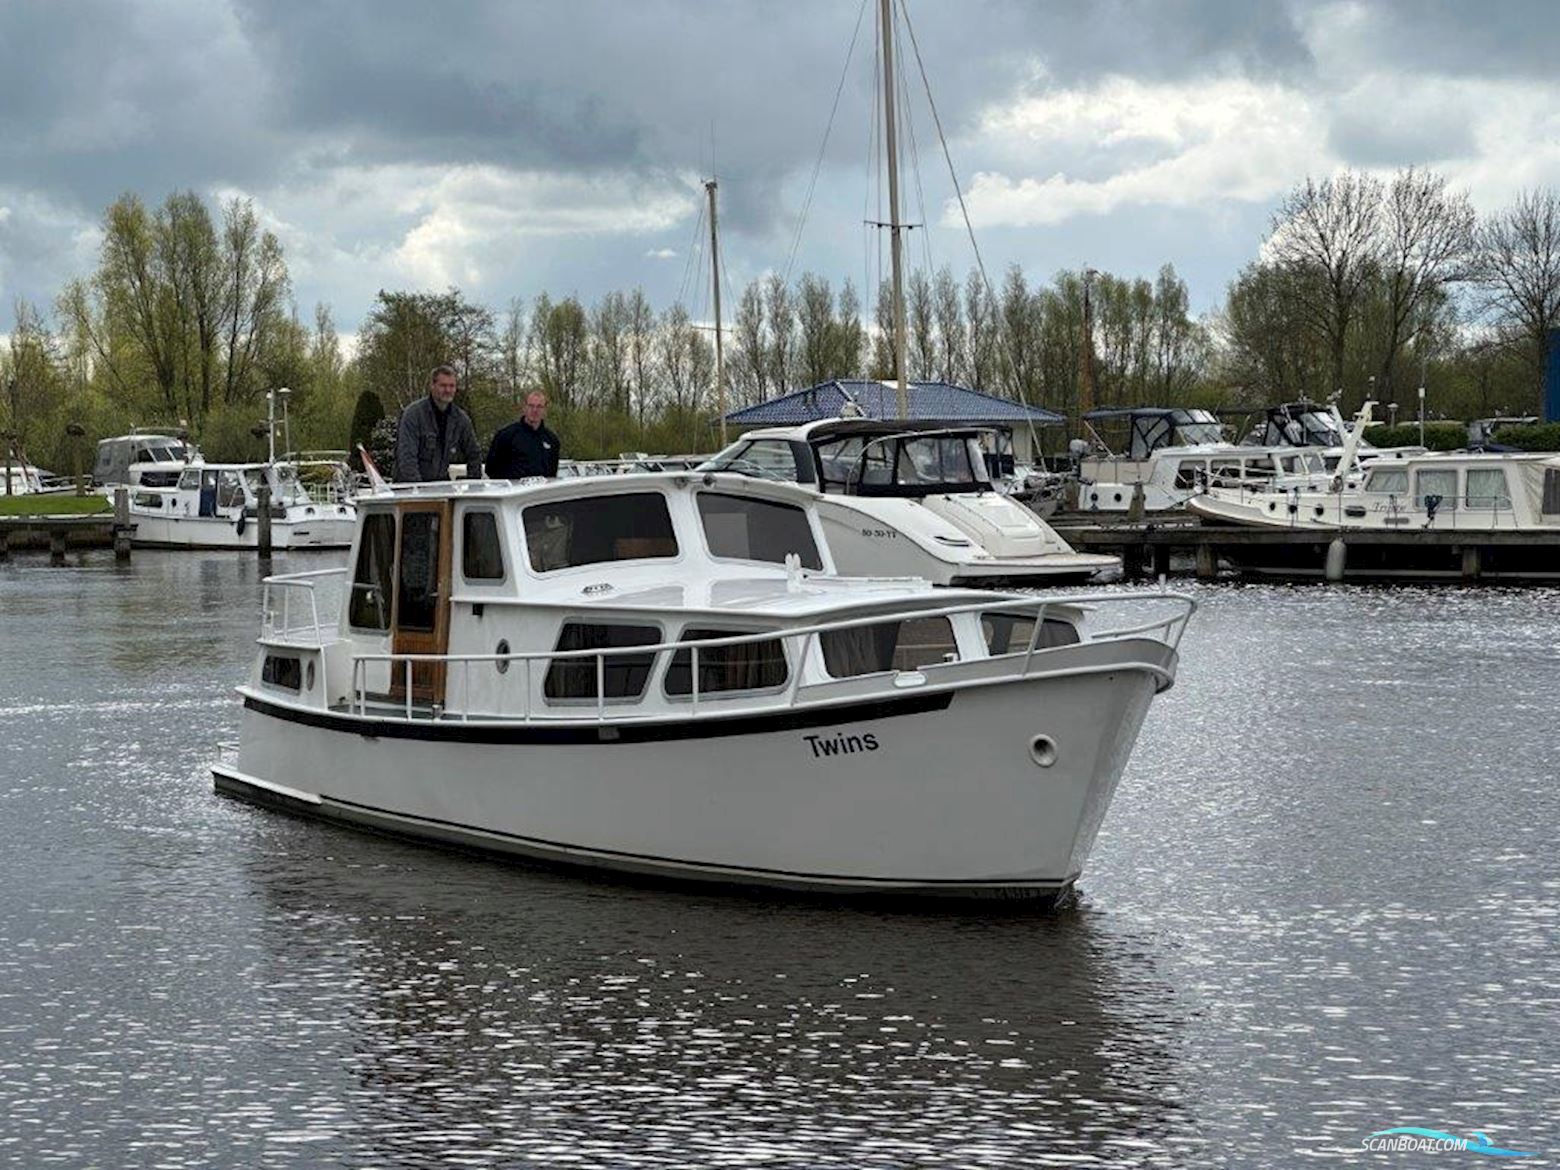 Debo Kruiser 10.50 AK Motorboot 1982, mit Daf 575 105 pk Diesel motor, Niederlande